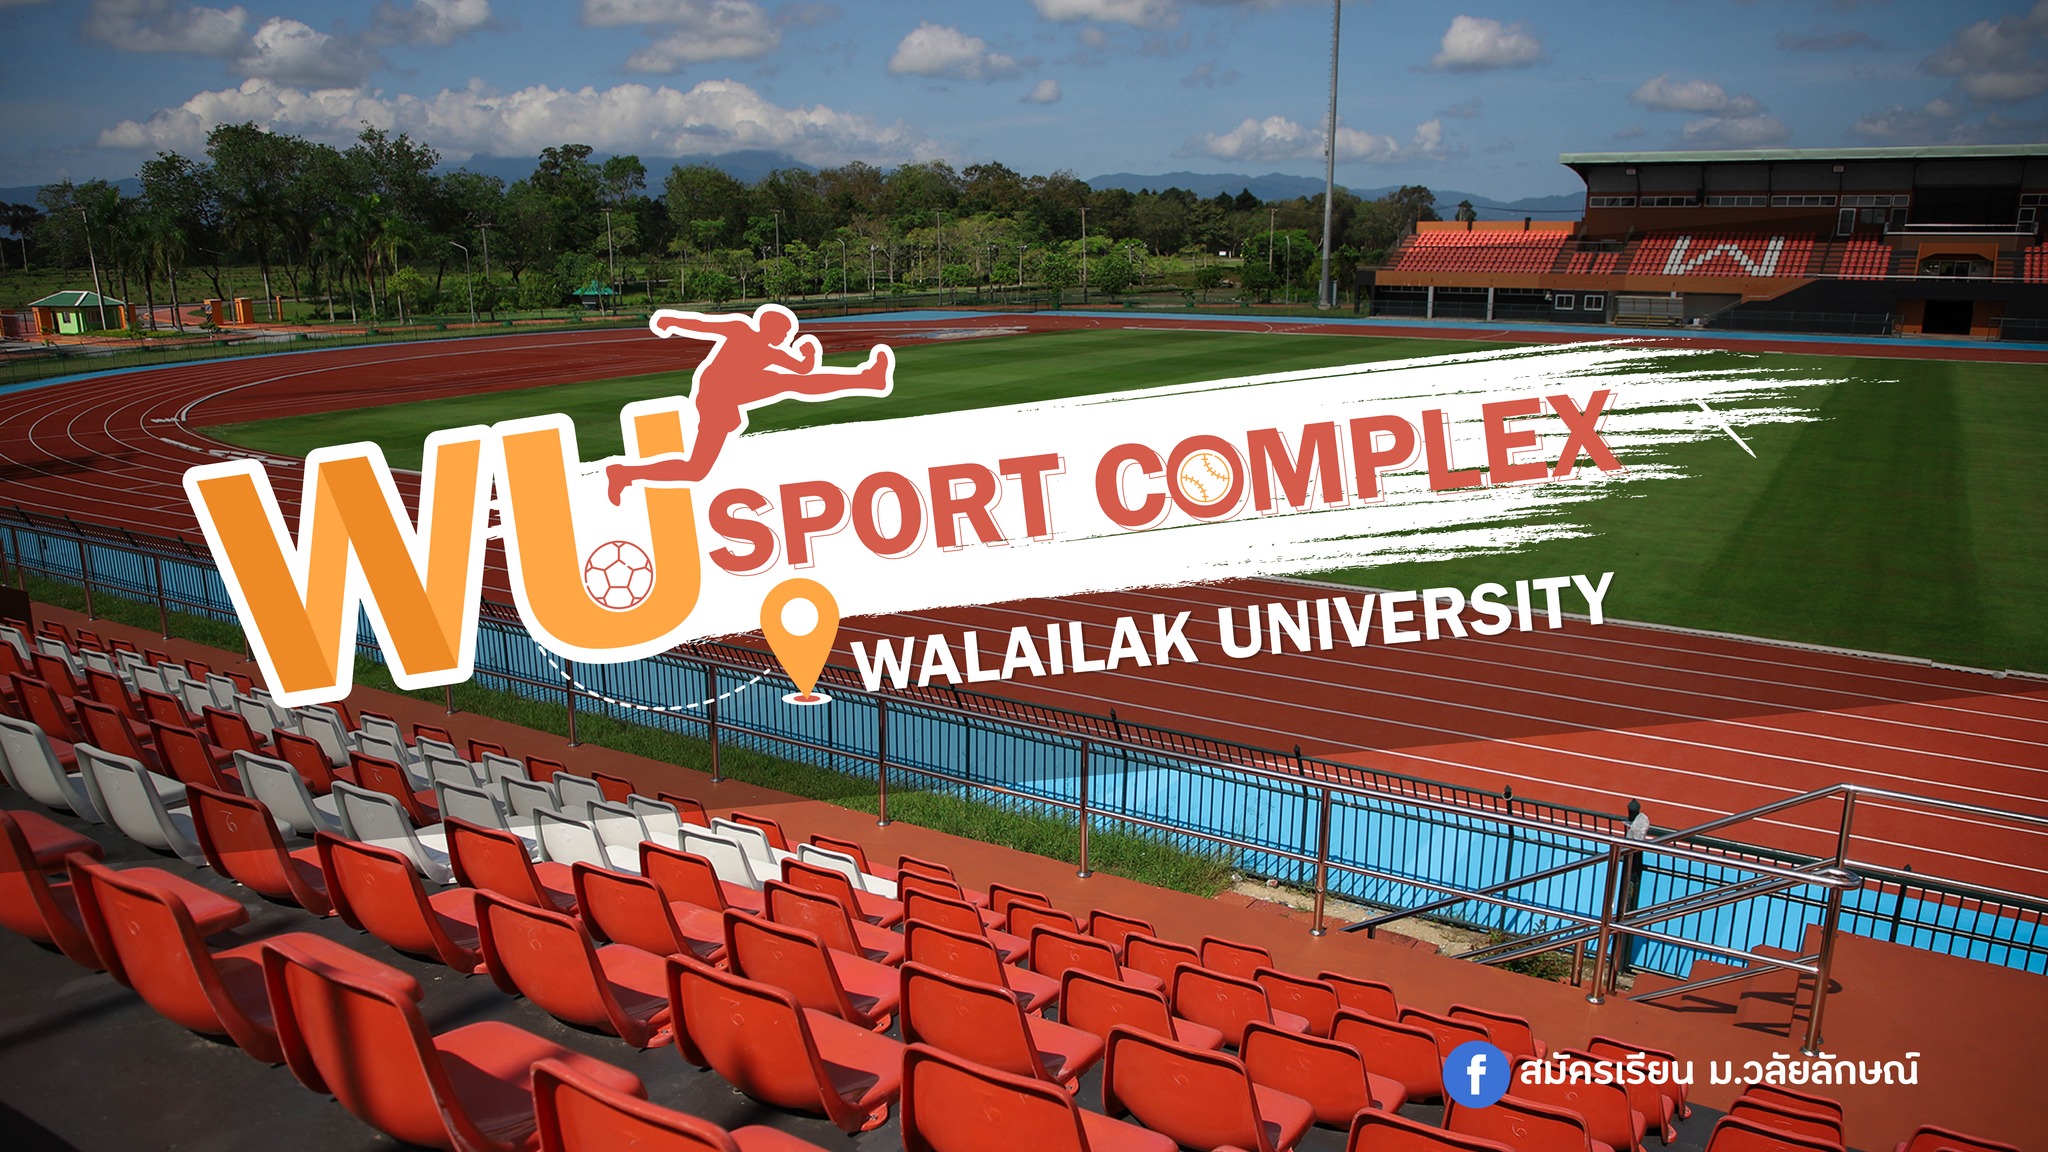 WU Sport Complex